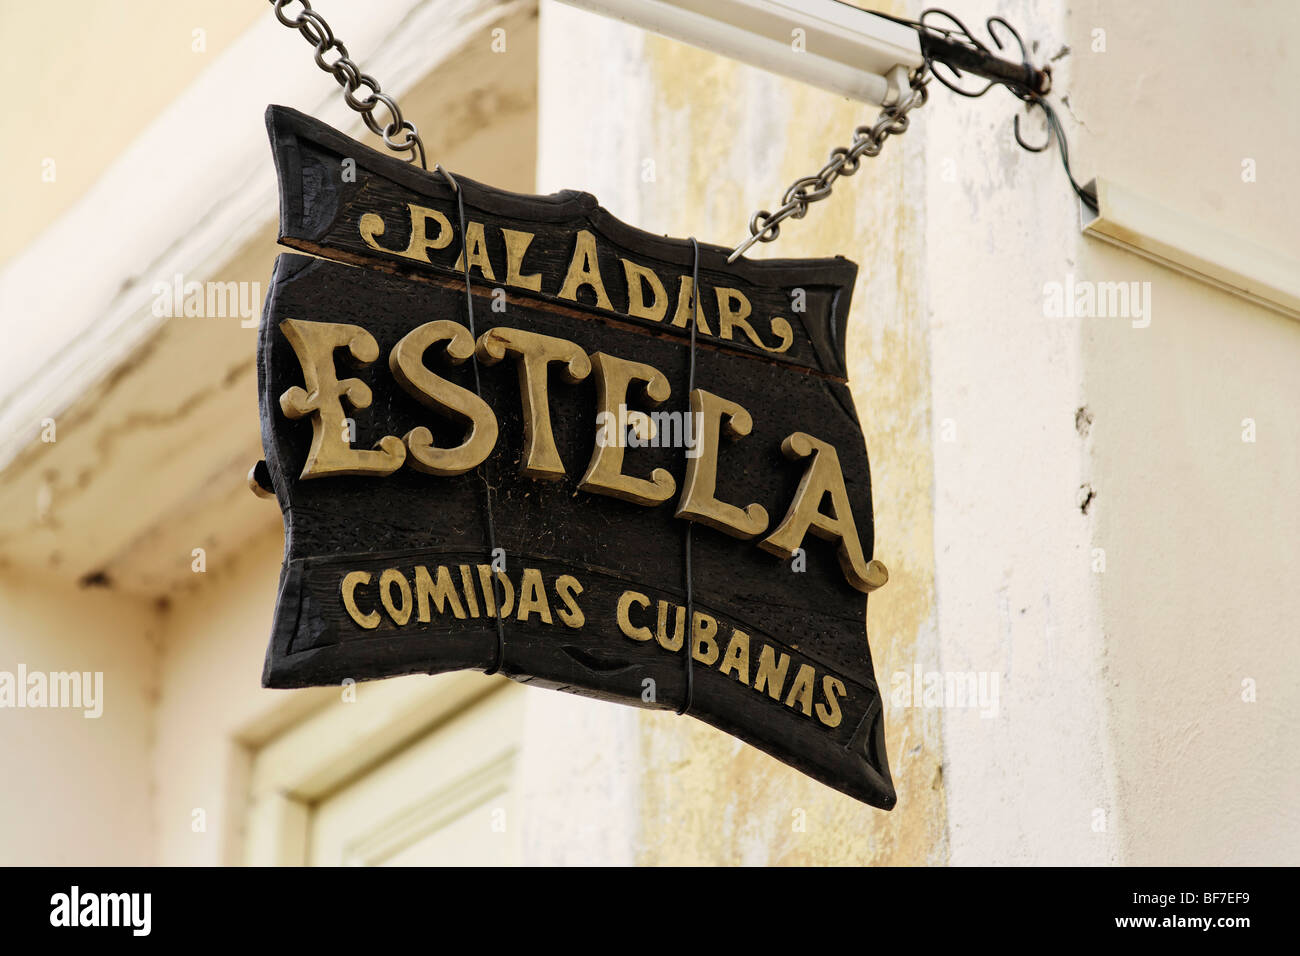 Zeichen für eine Paladar, familiär geführtes, Privatbesitz befindliches Restaurant, Trinidad, Sancti Spiritus, Kuba, Westindische Inseln Stockfoto